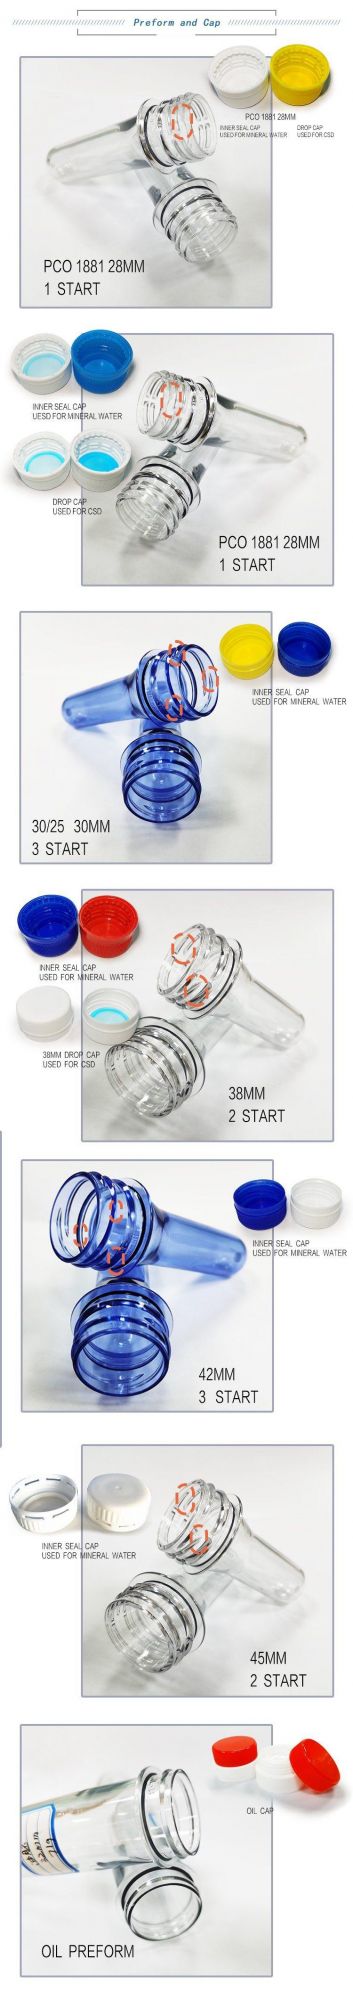 Plastic Bottle Preform 38mm 30g Pet for Mineral Bottle/Juice/CSD/Hot Filling